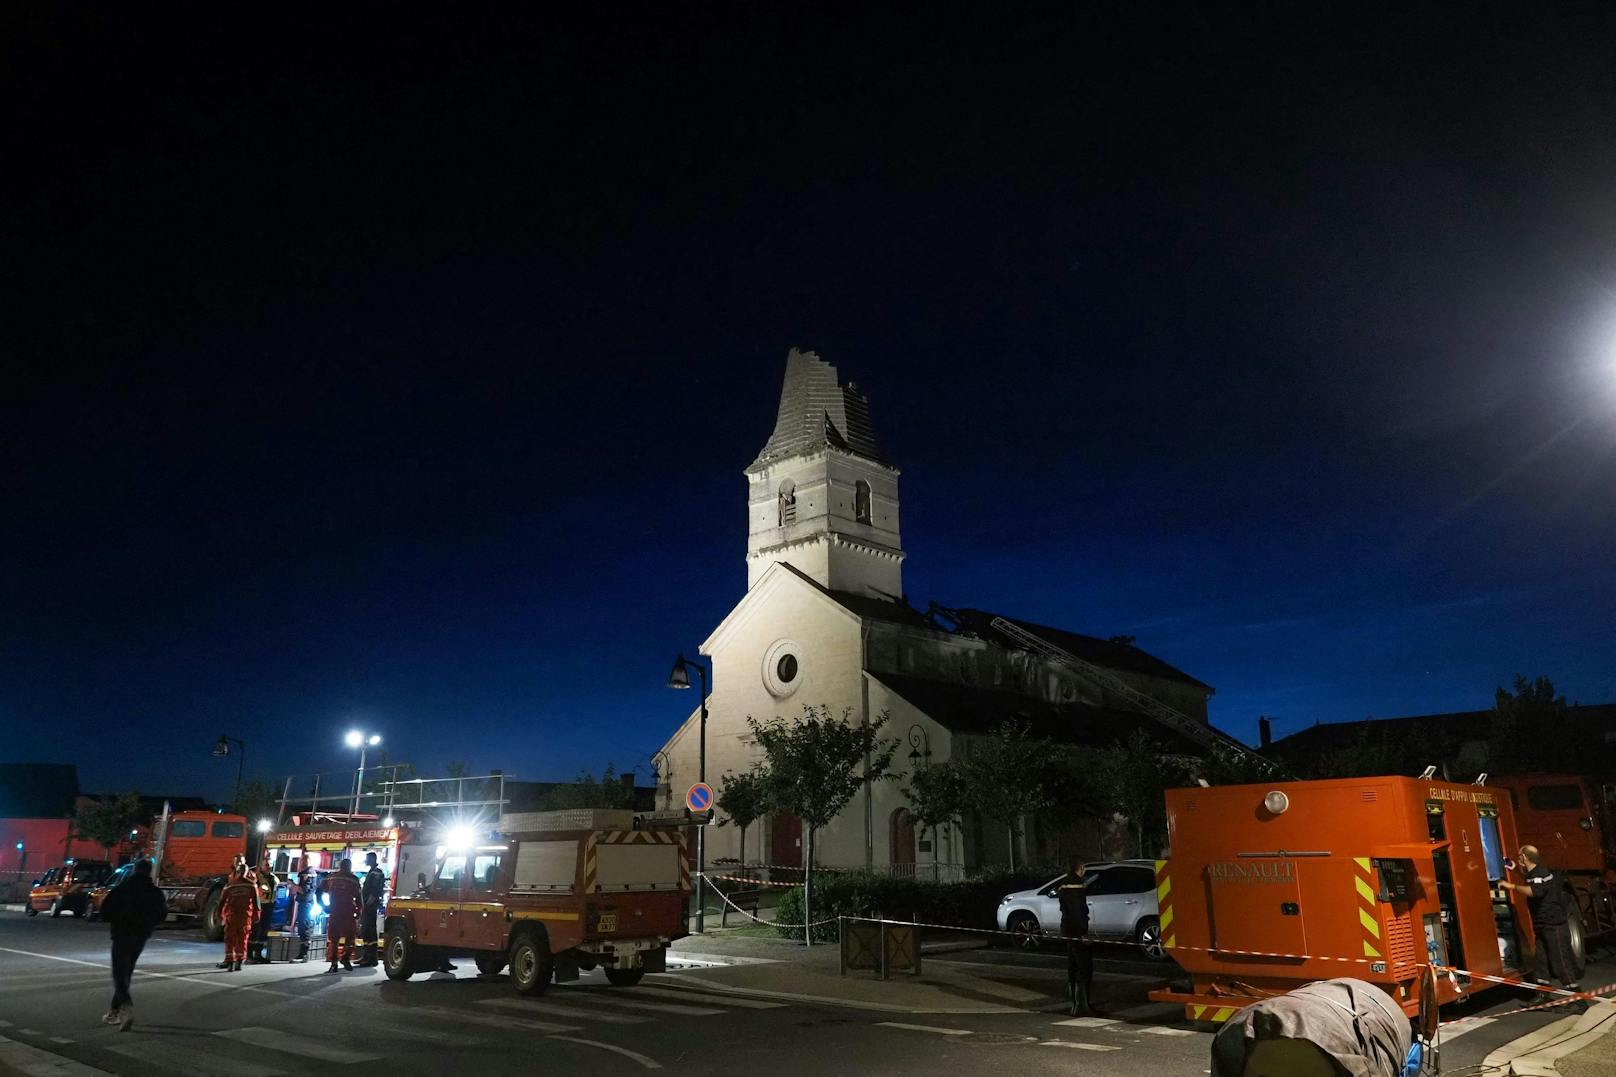 Die Kirche von Saint-Nicolas de Bourgueil wurde am Samstag schwer beschädigt.